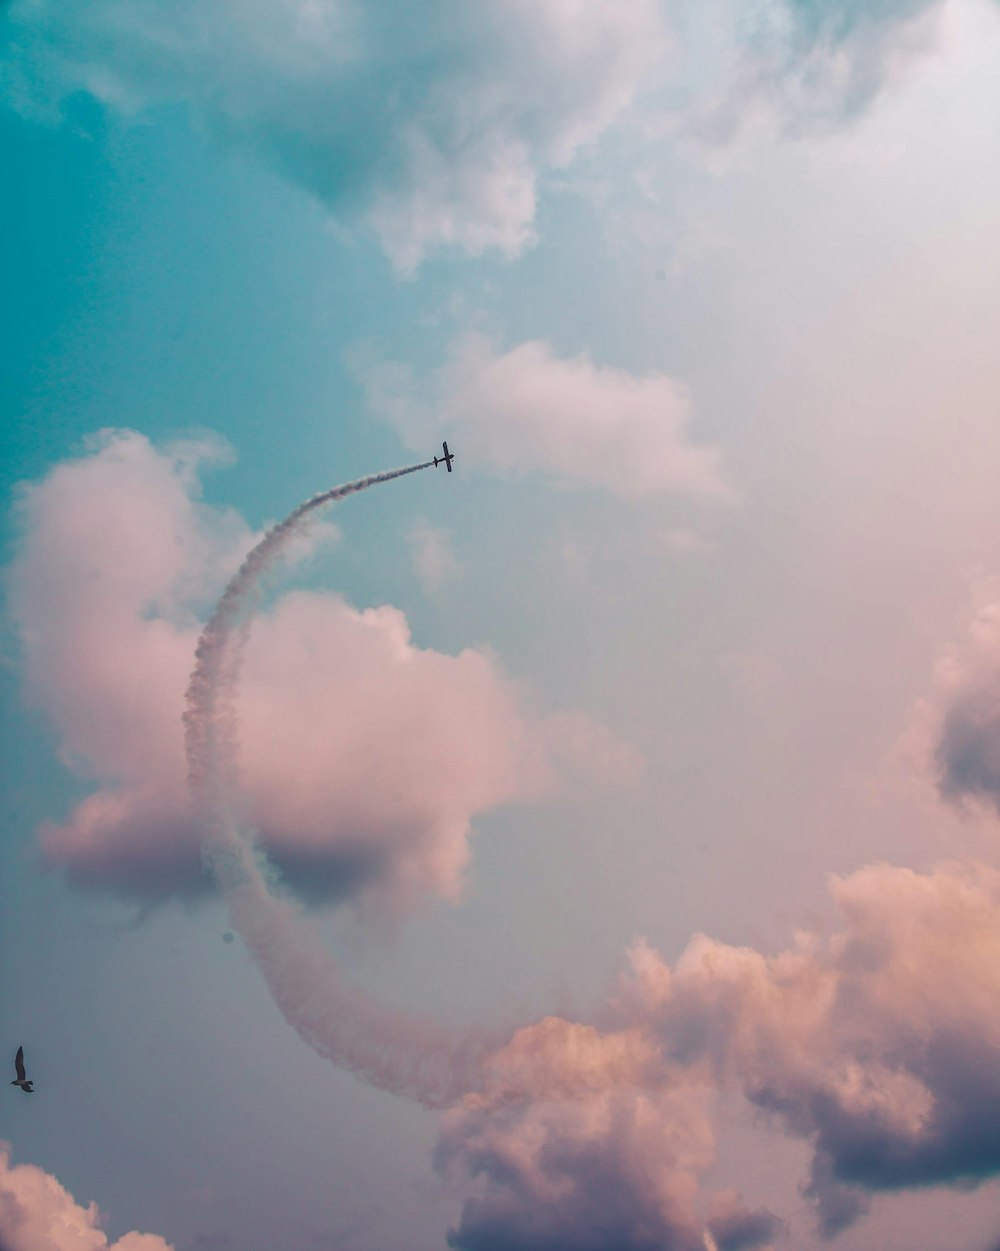 Photographie en contre-plongée d’un avion volant à haute altitude avec une traînée de fumée pendant la journée